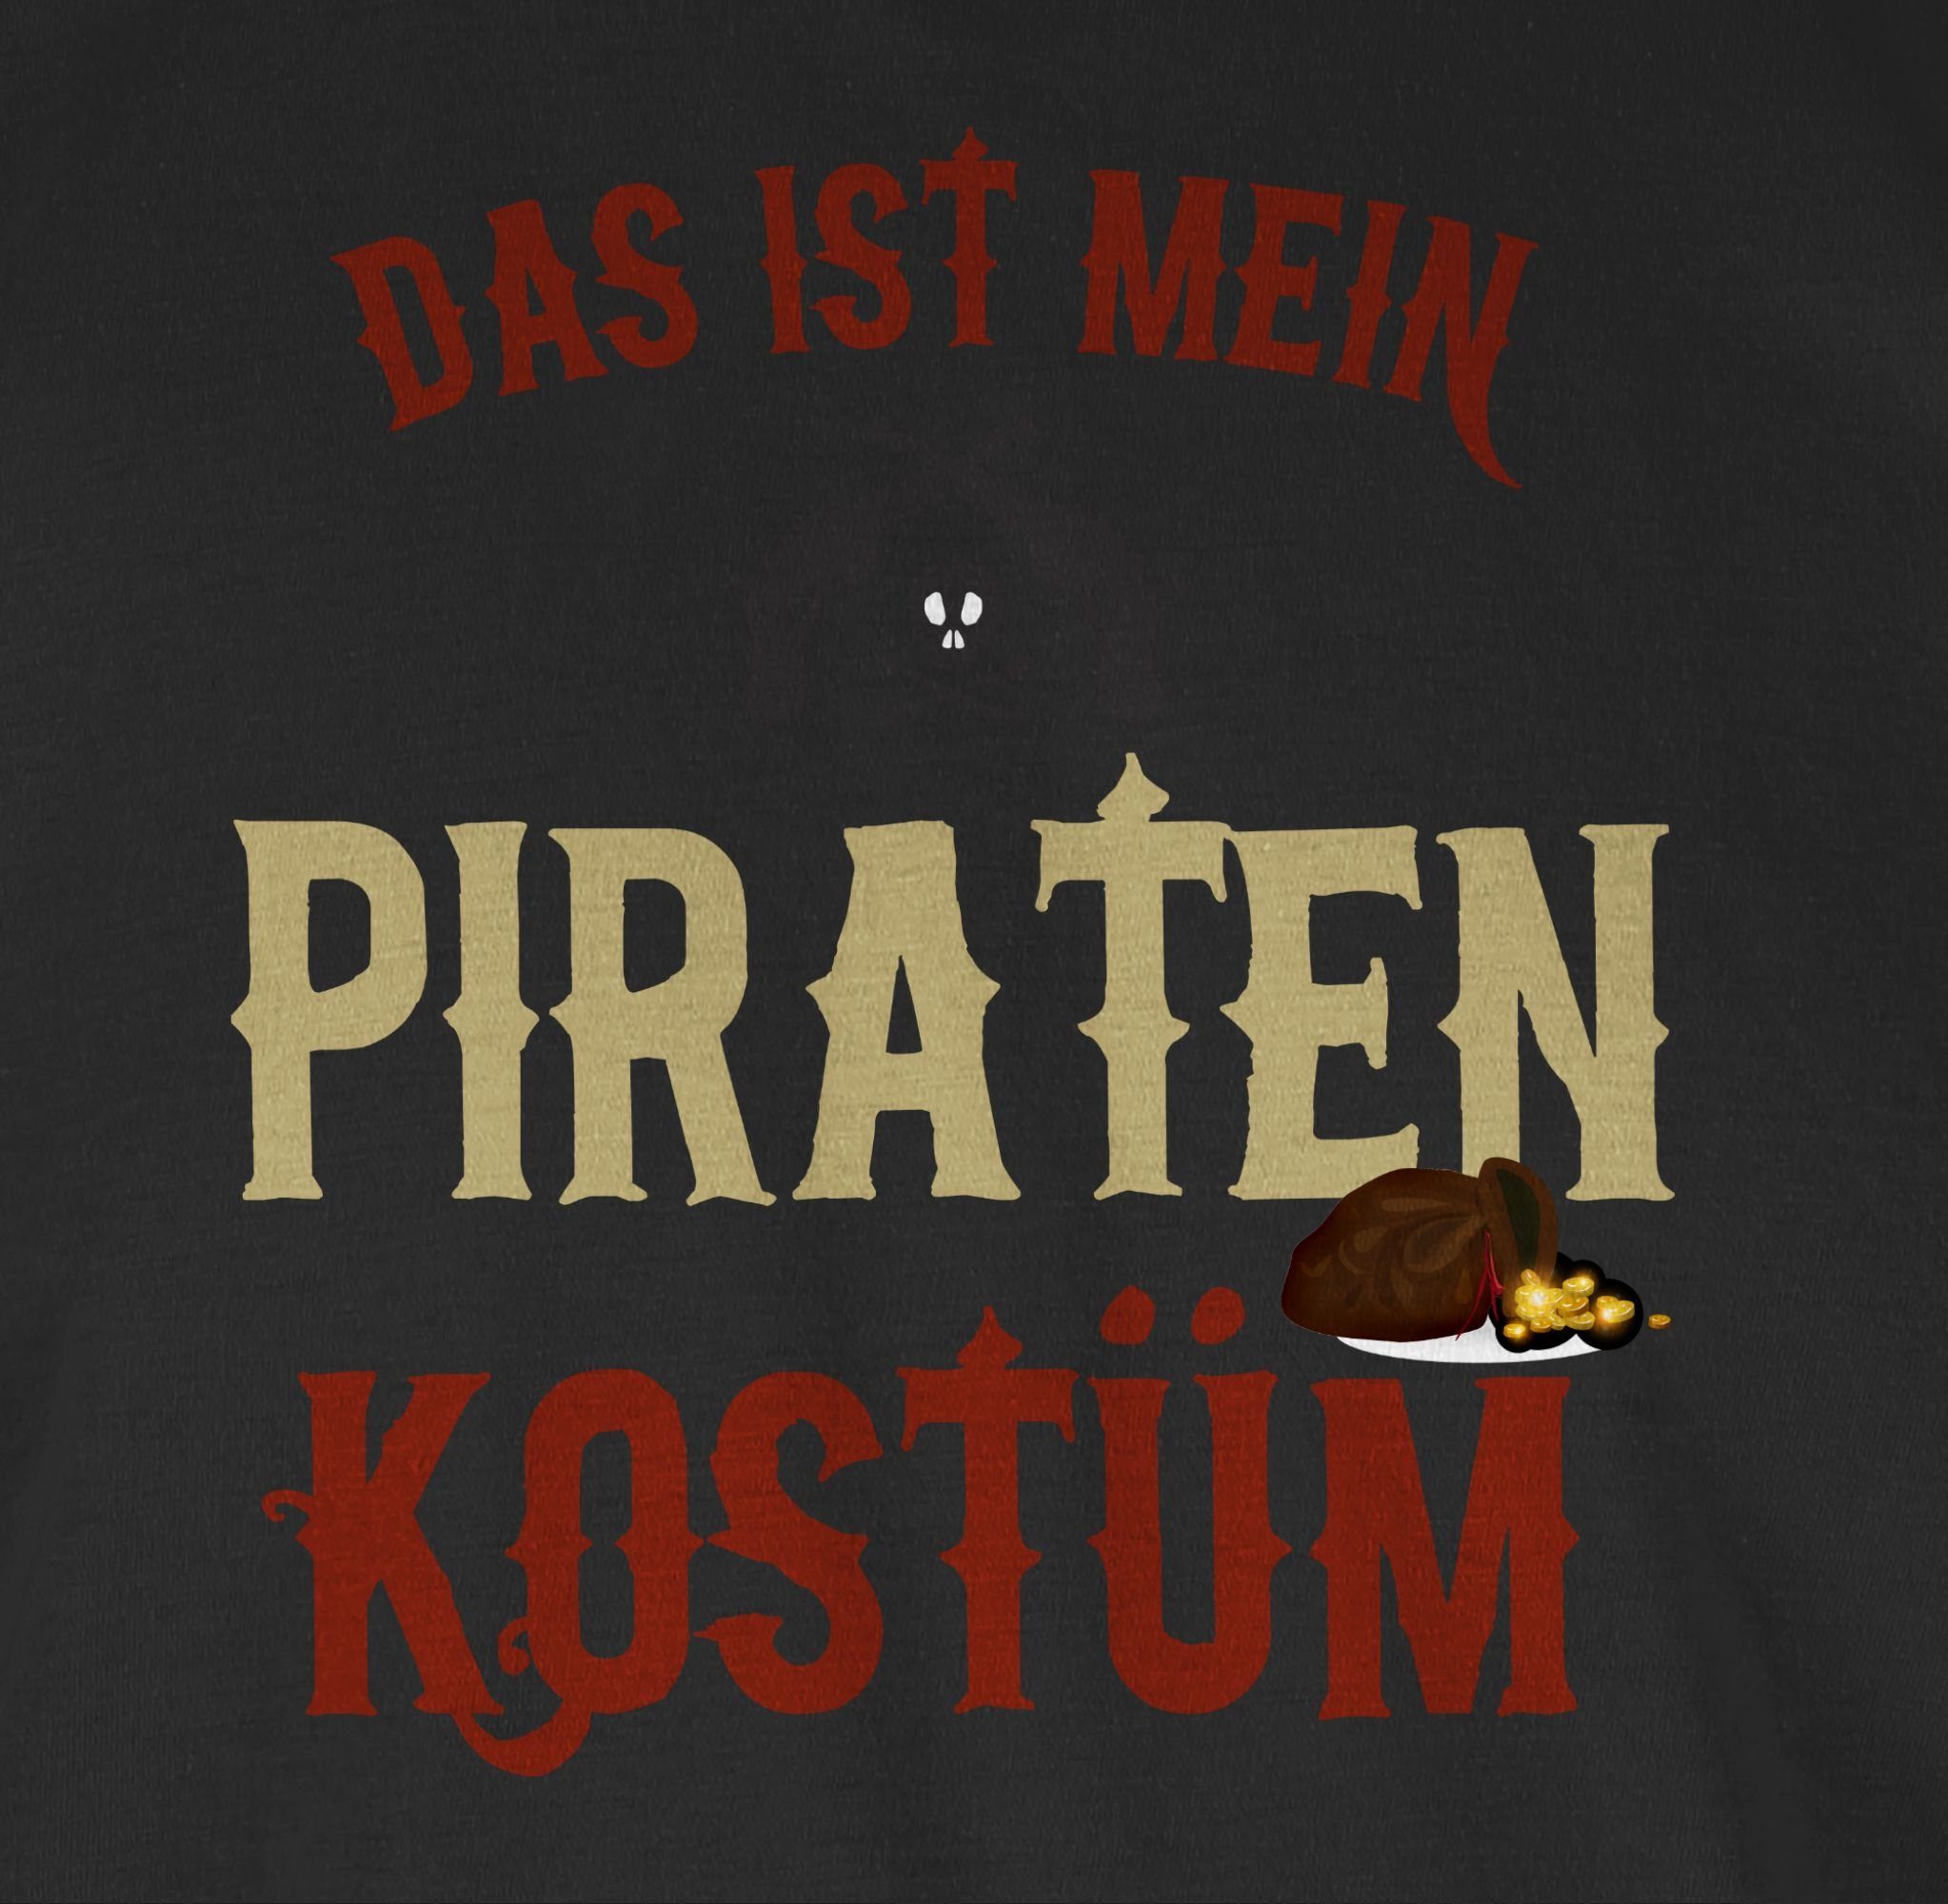 Shirtracer T-Shirt Piratenkostüm Karneval Kostüm Outfit Pirat Das verkleidet Schwarz Piraten ist - 01 mein